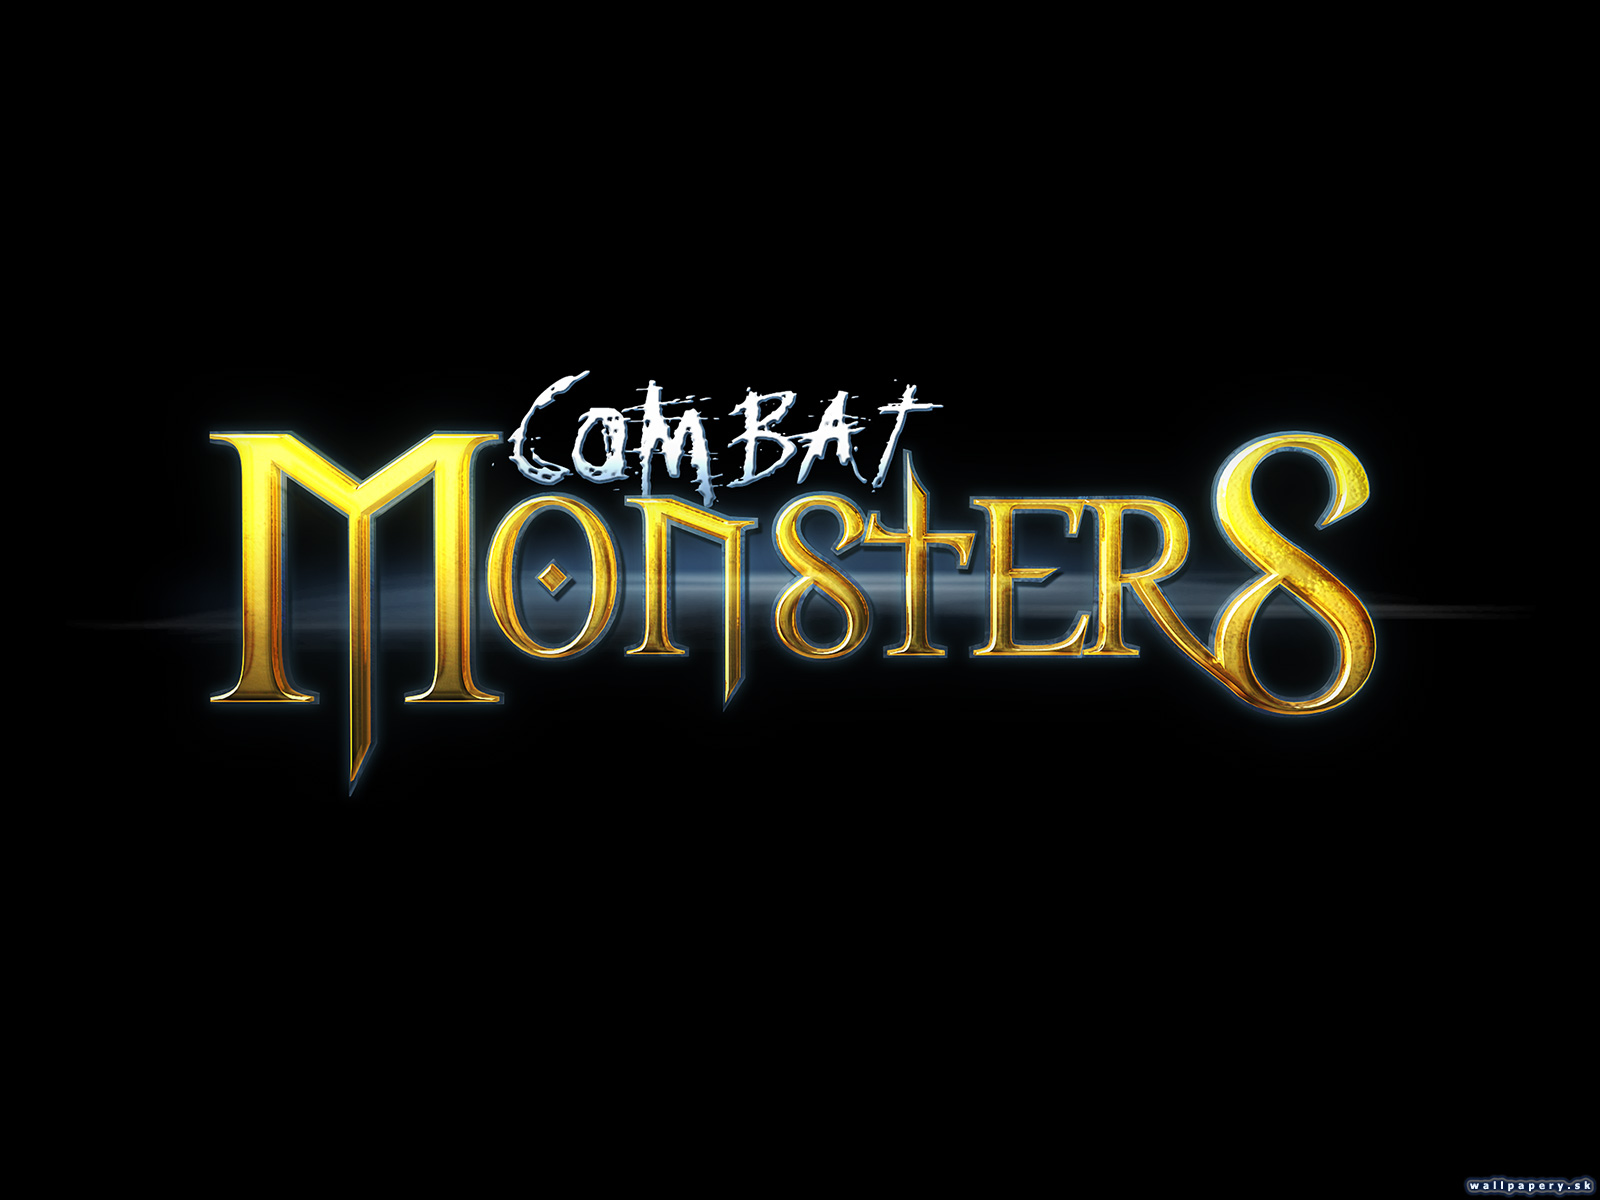 Combat Monsters - wallpaper 3